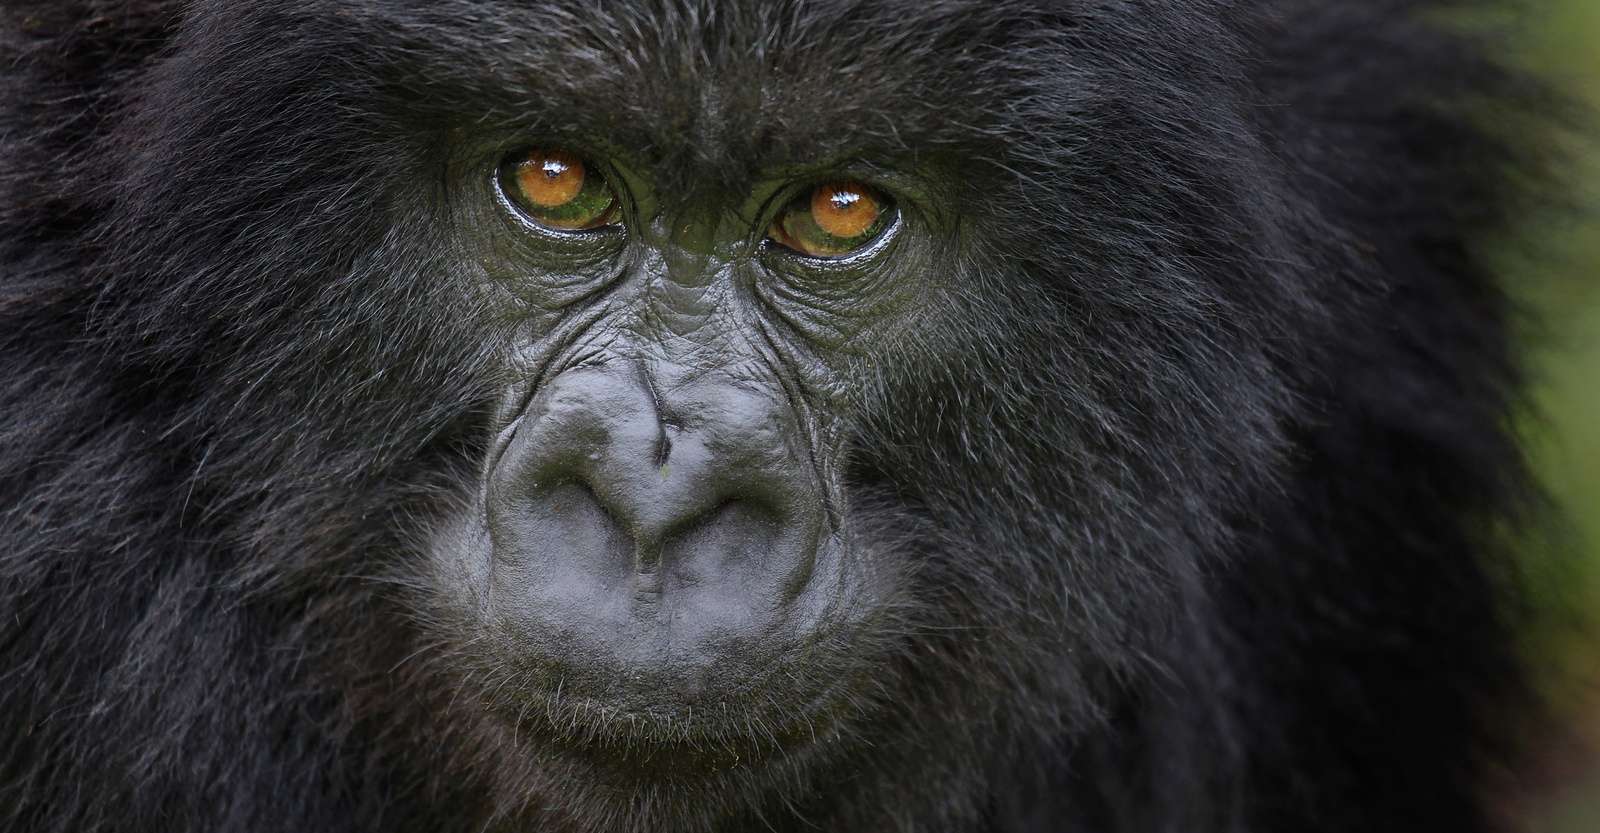 Mountain gorilla, Bwindi Impenetrable National Park, Uganda.